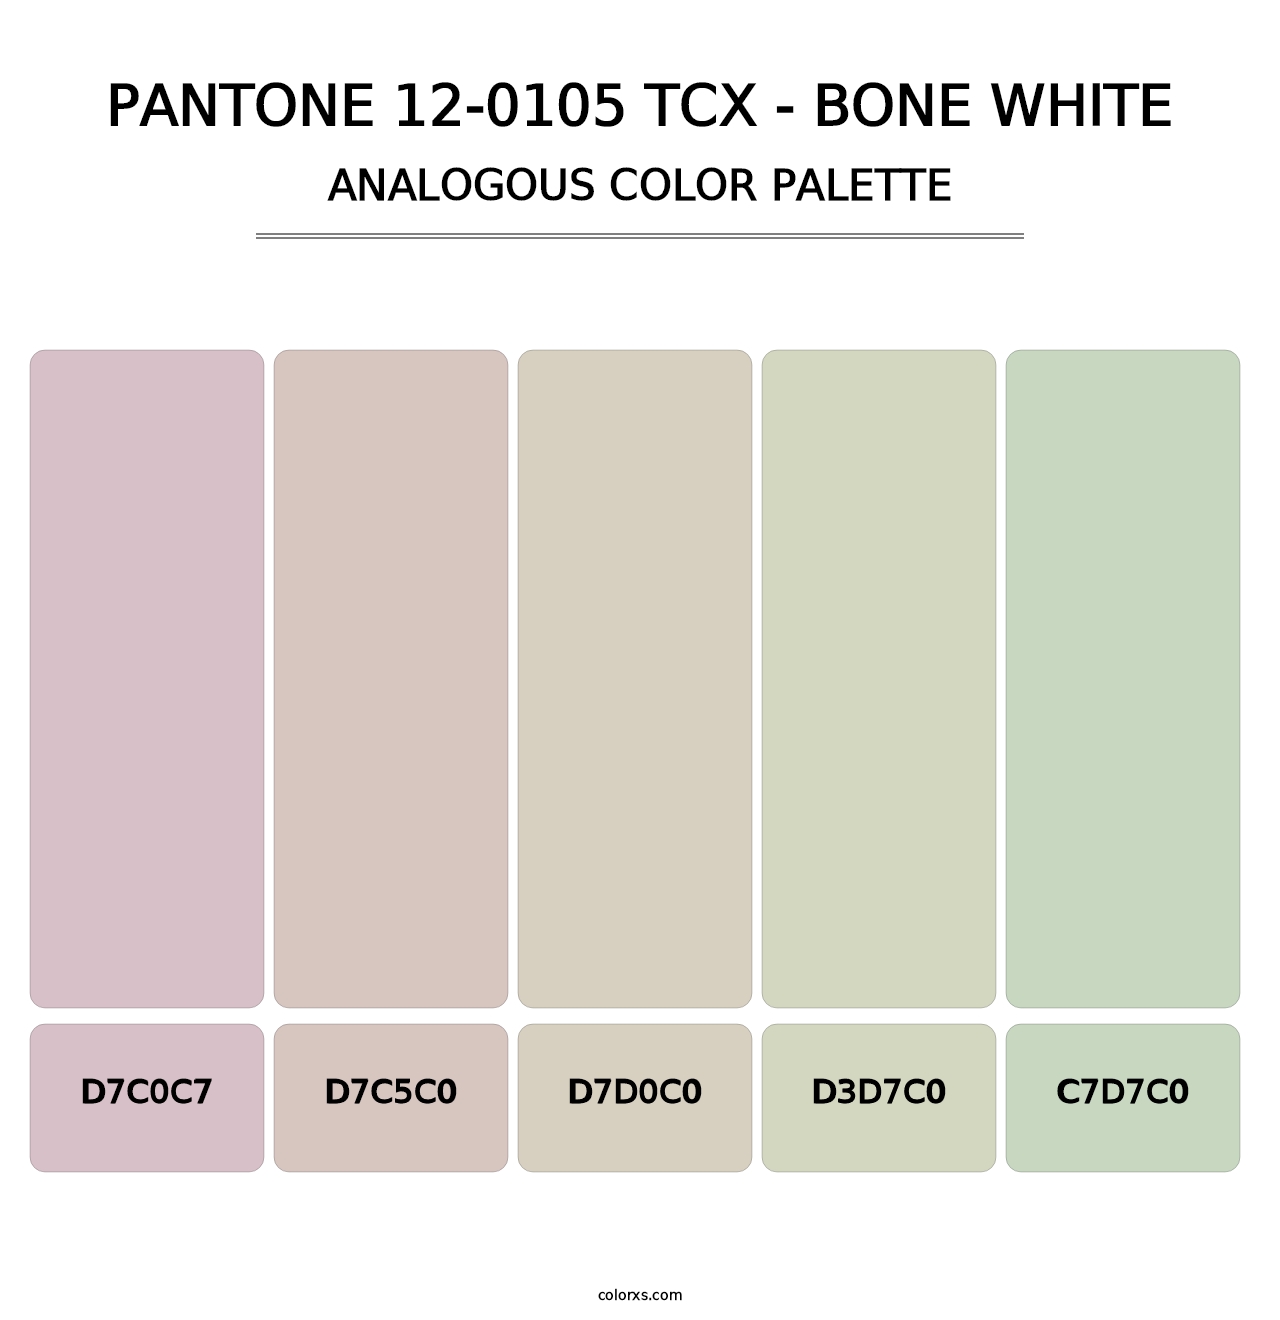 PANTONE 12-0105 TCX - Bone White - Analogous Color Palette